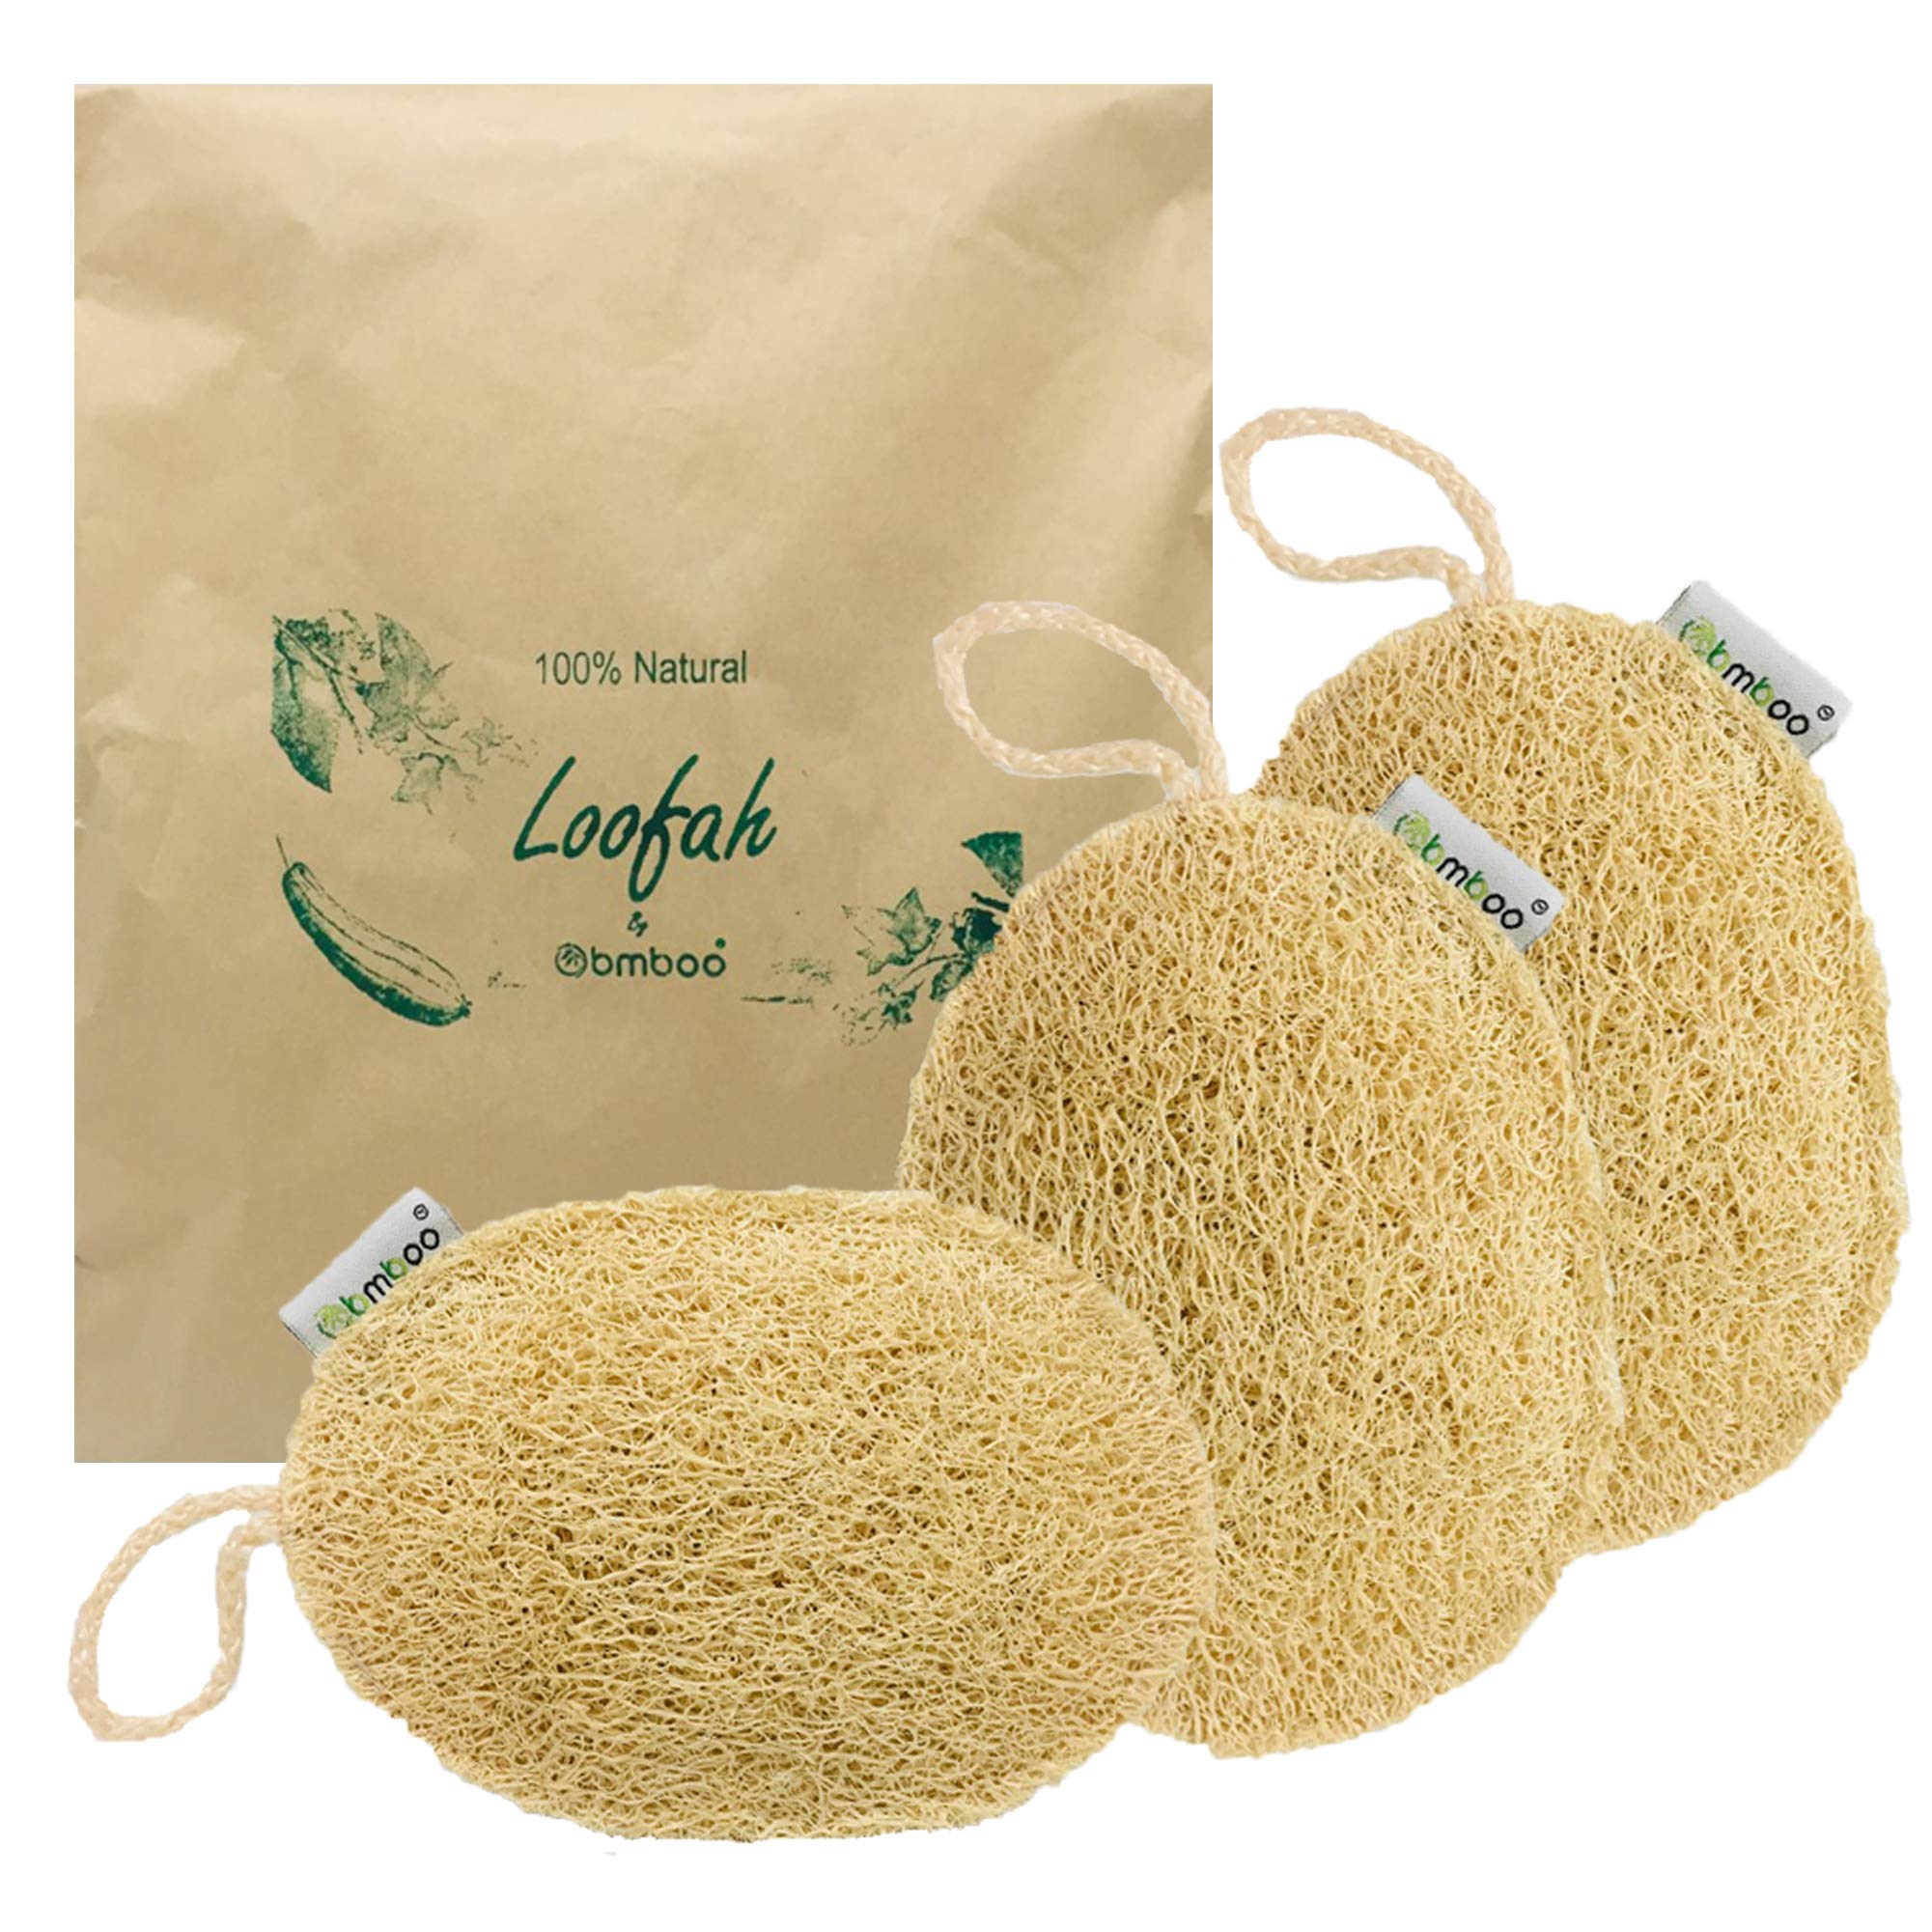 100% Natural Ceylon Organic Sponge Gourd Scrubber For Skin/Kitchen Sponges  New